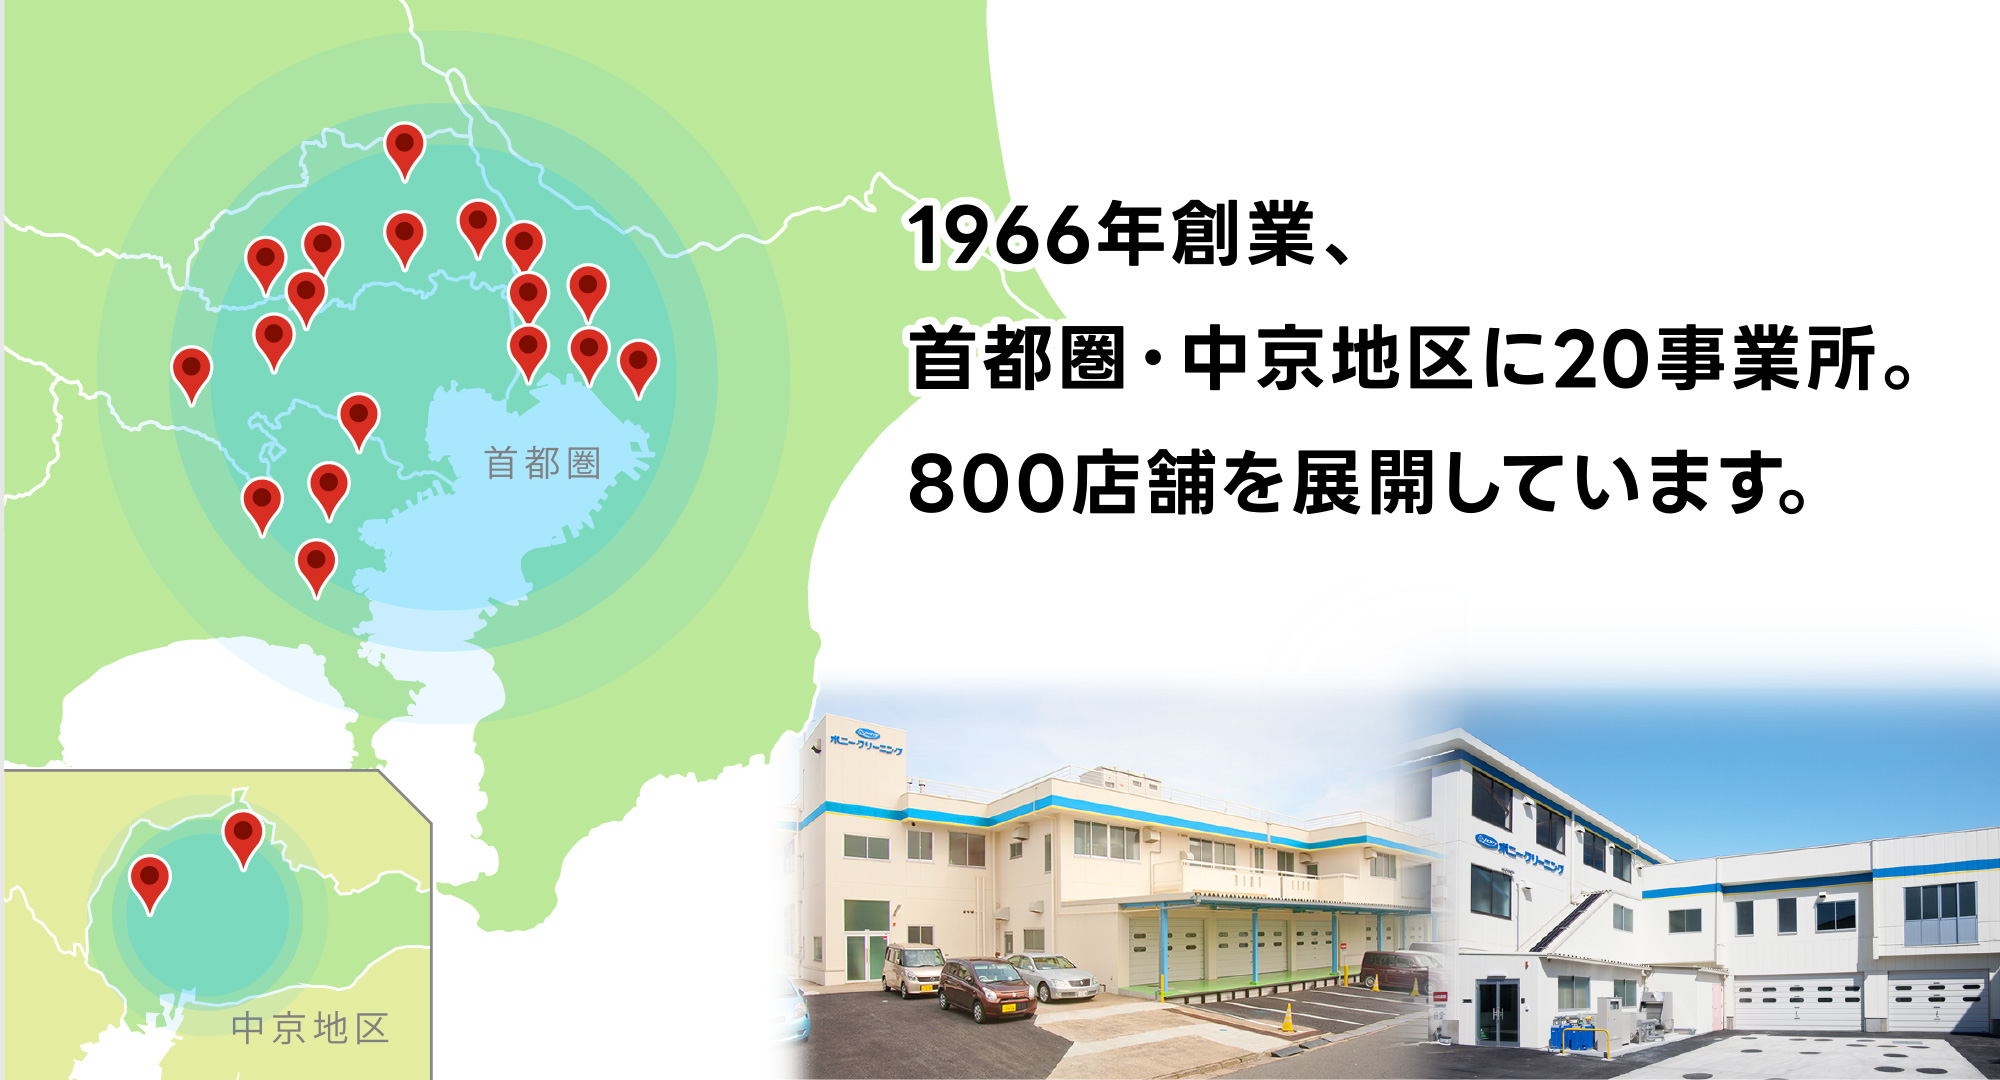 1966年創業、首都圏・中京地区に20事務所。800店舗を展開しています。